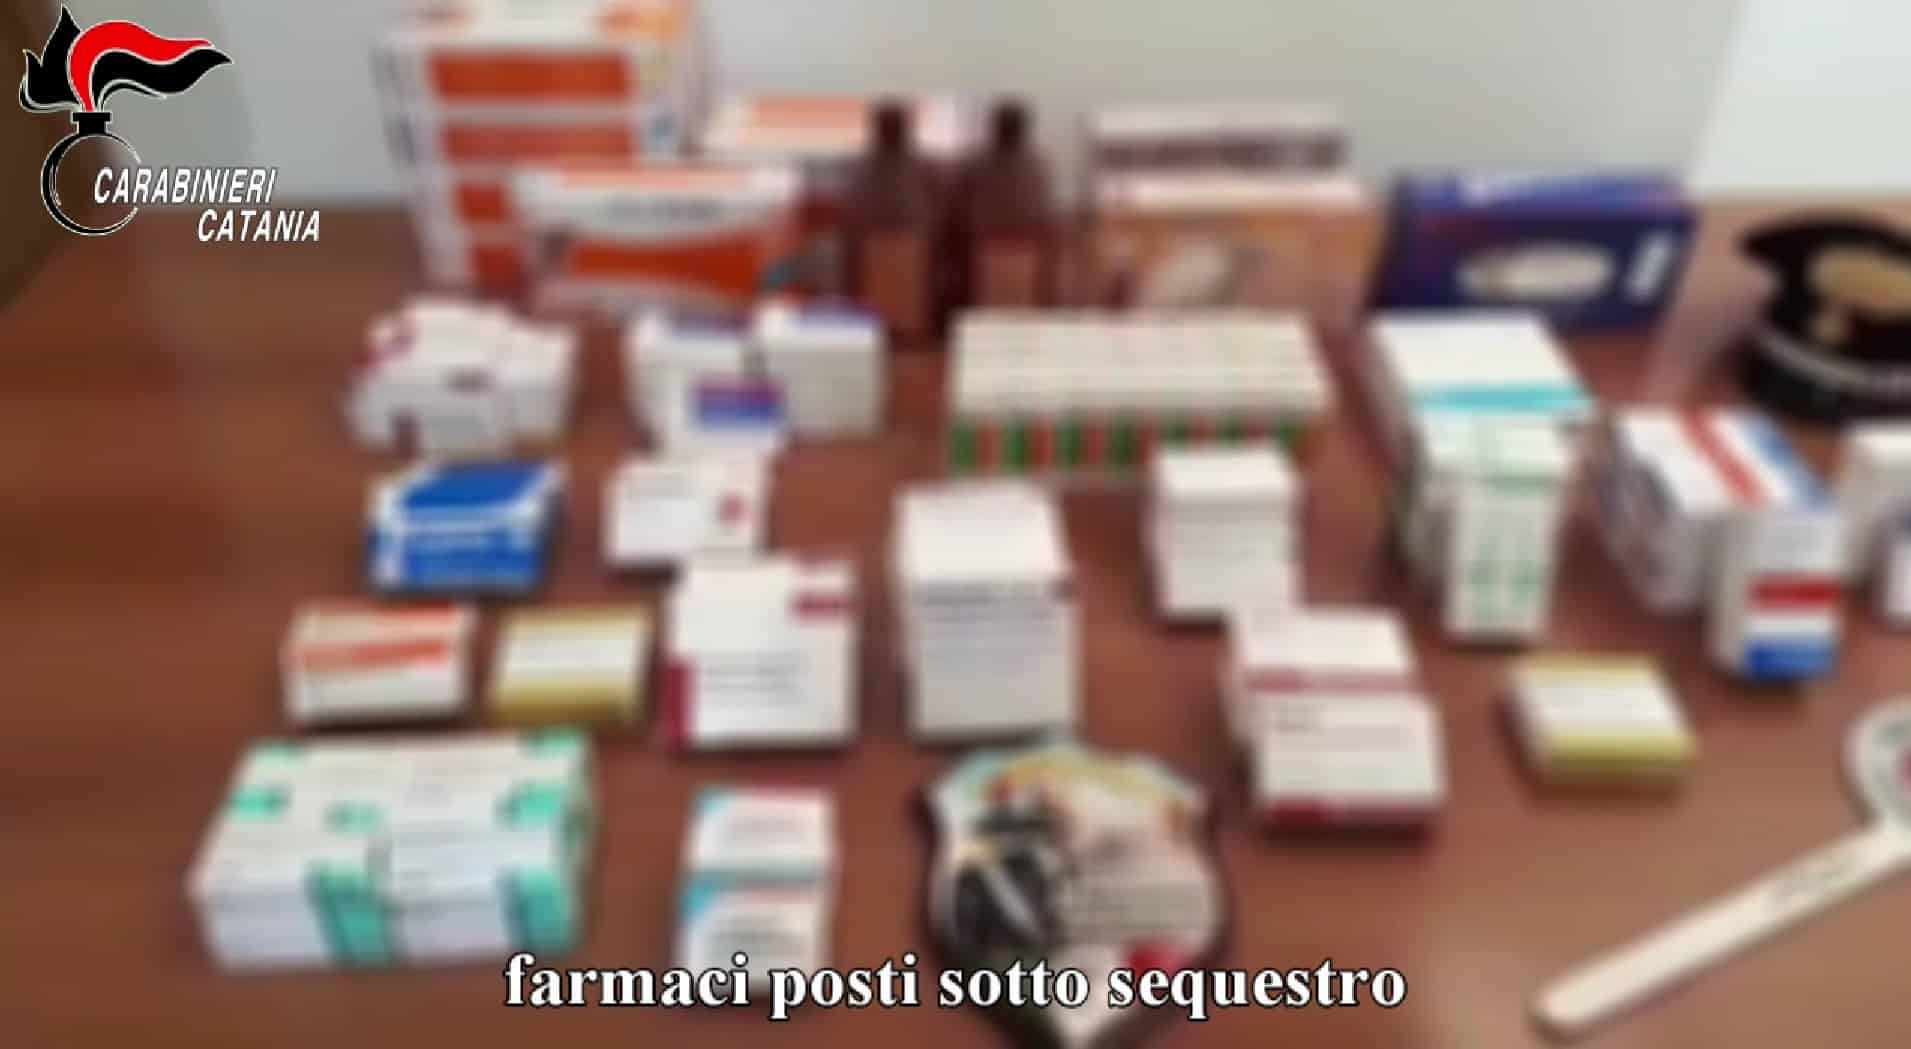 Porta a a casa i farmaci destinati ai pazienti, in manette ausiliario dell’ospedale “Gravina e Santo Pietro” – VIDEO